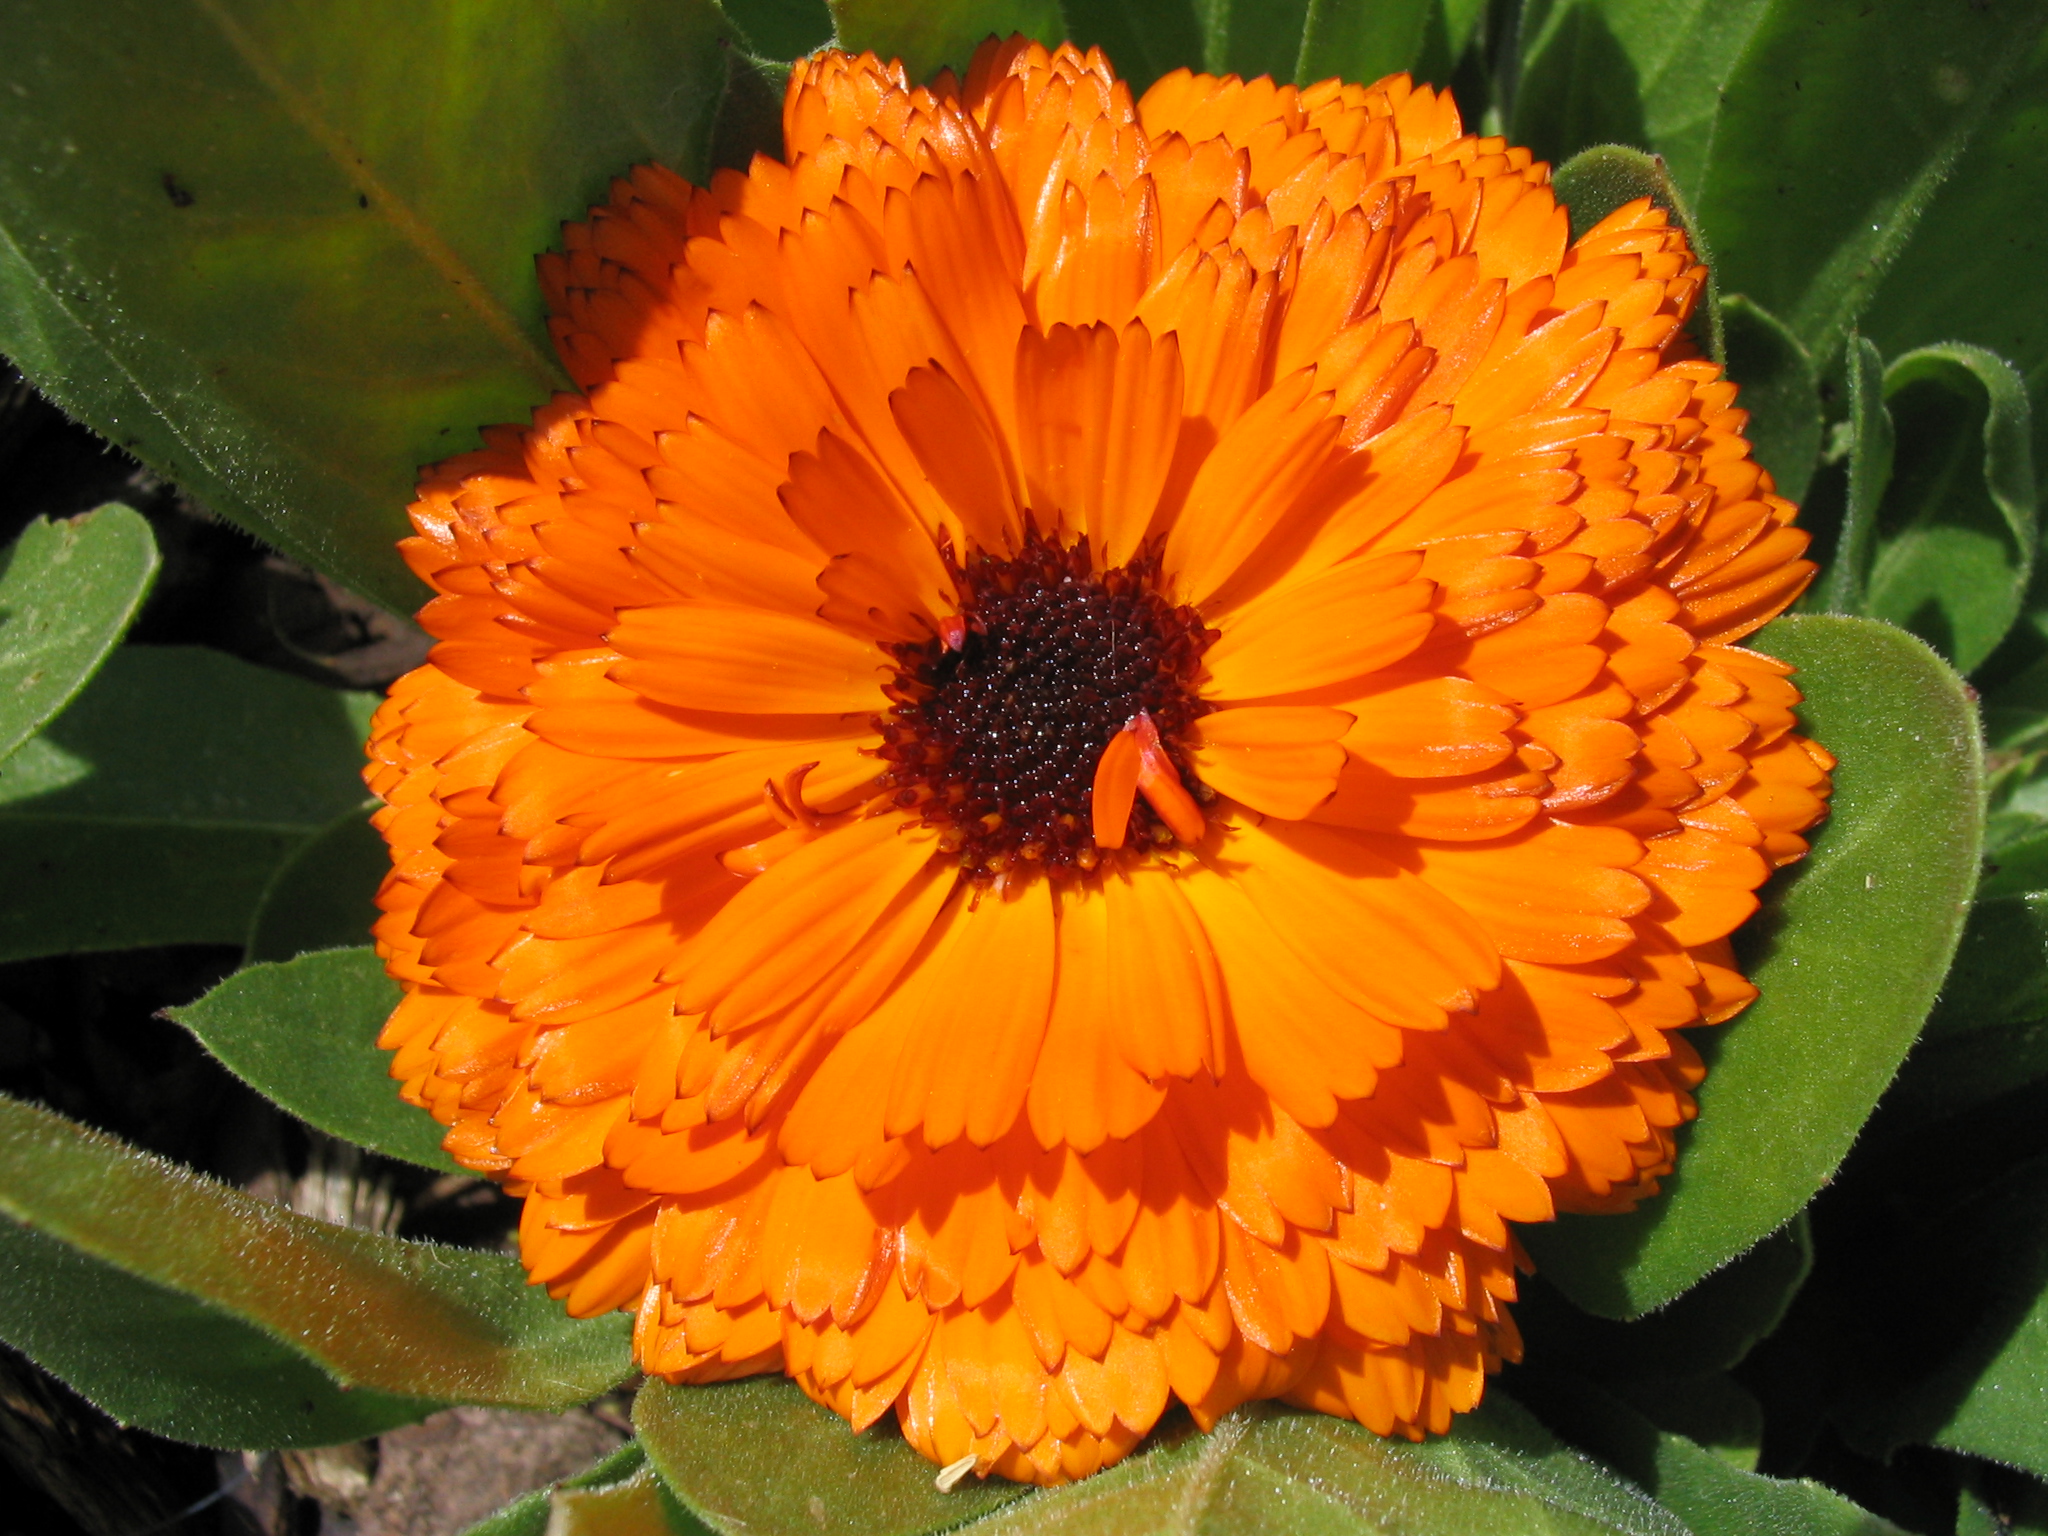 An orange flower photo